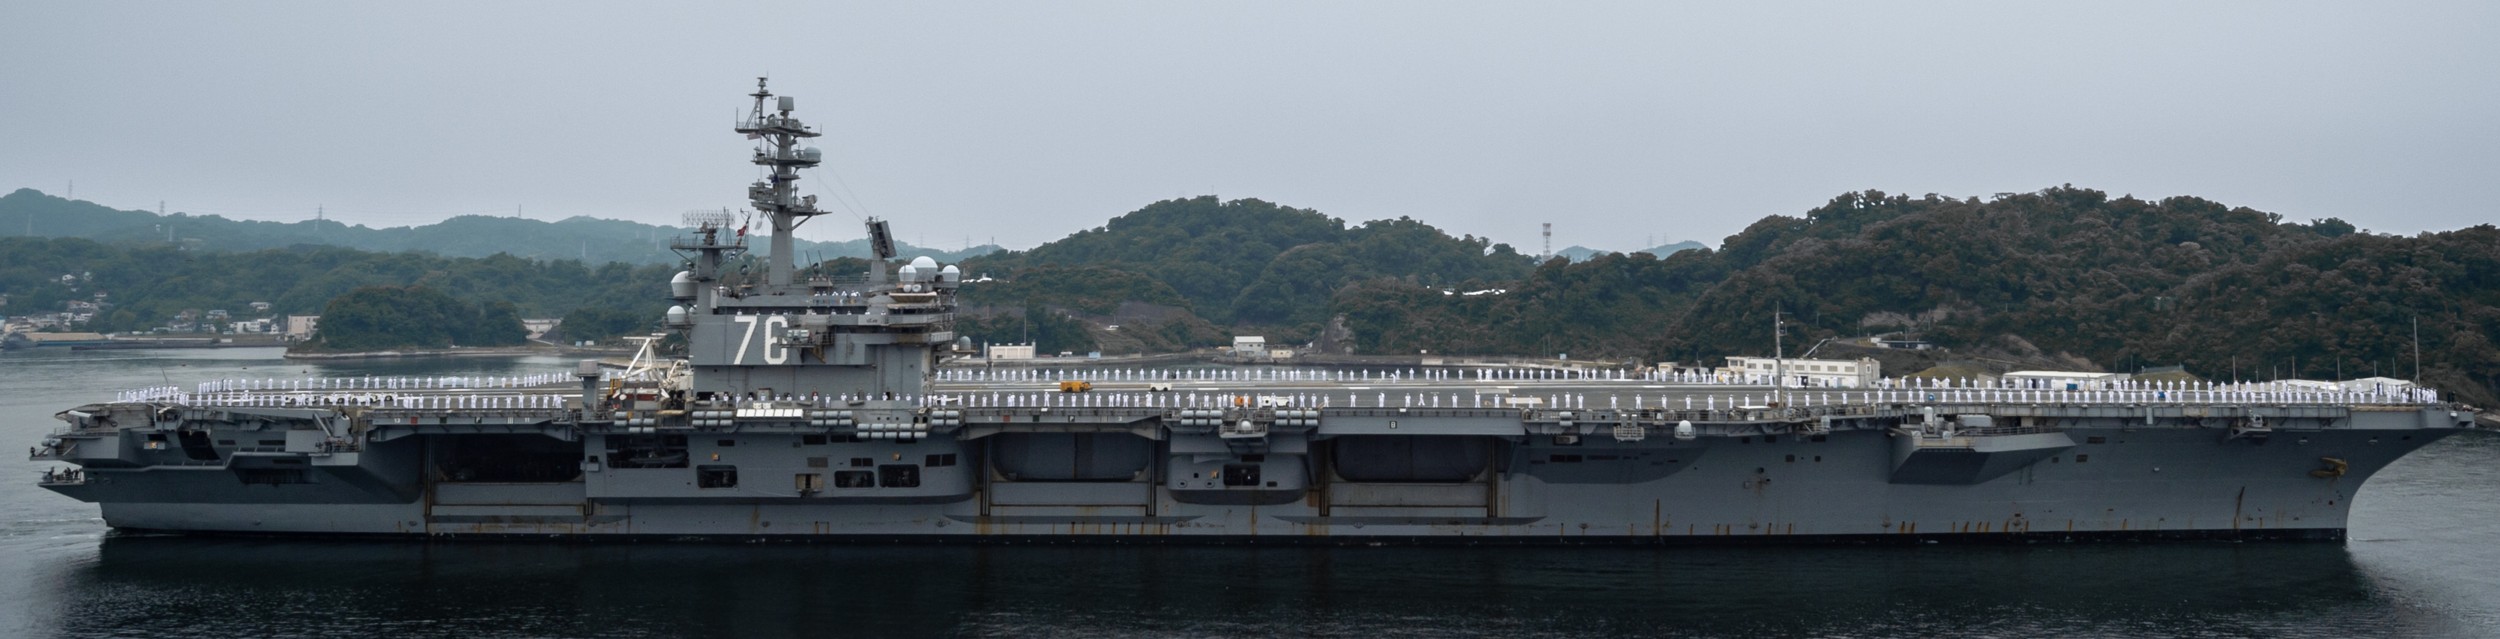 cvn-76 uss ronald reagan nimitz class aircraft carrier departing yokosuka 169